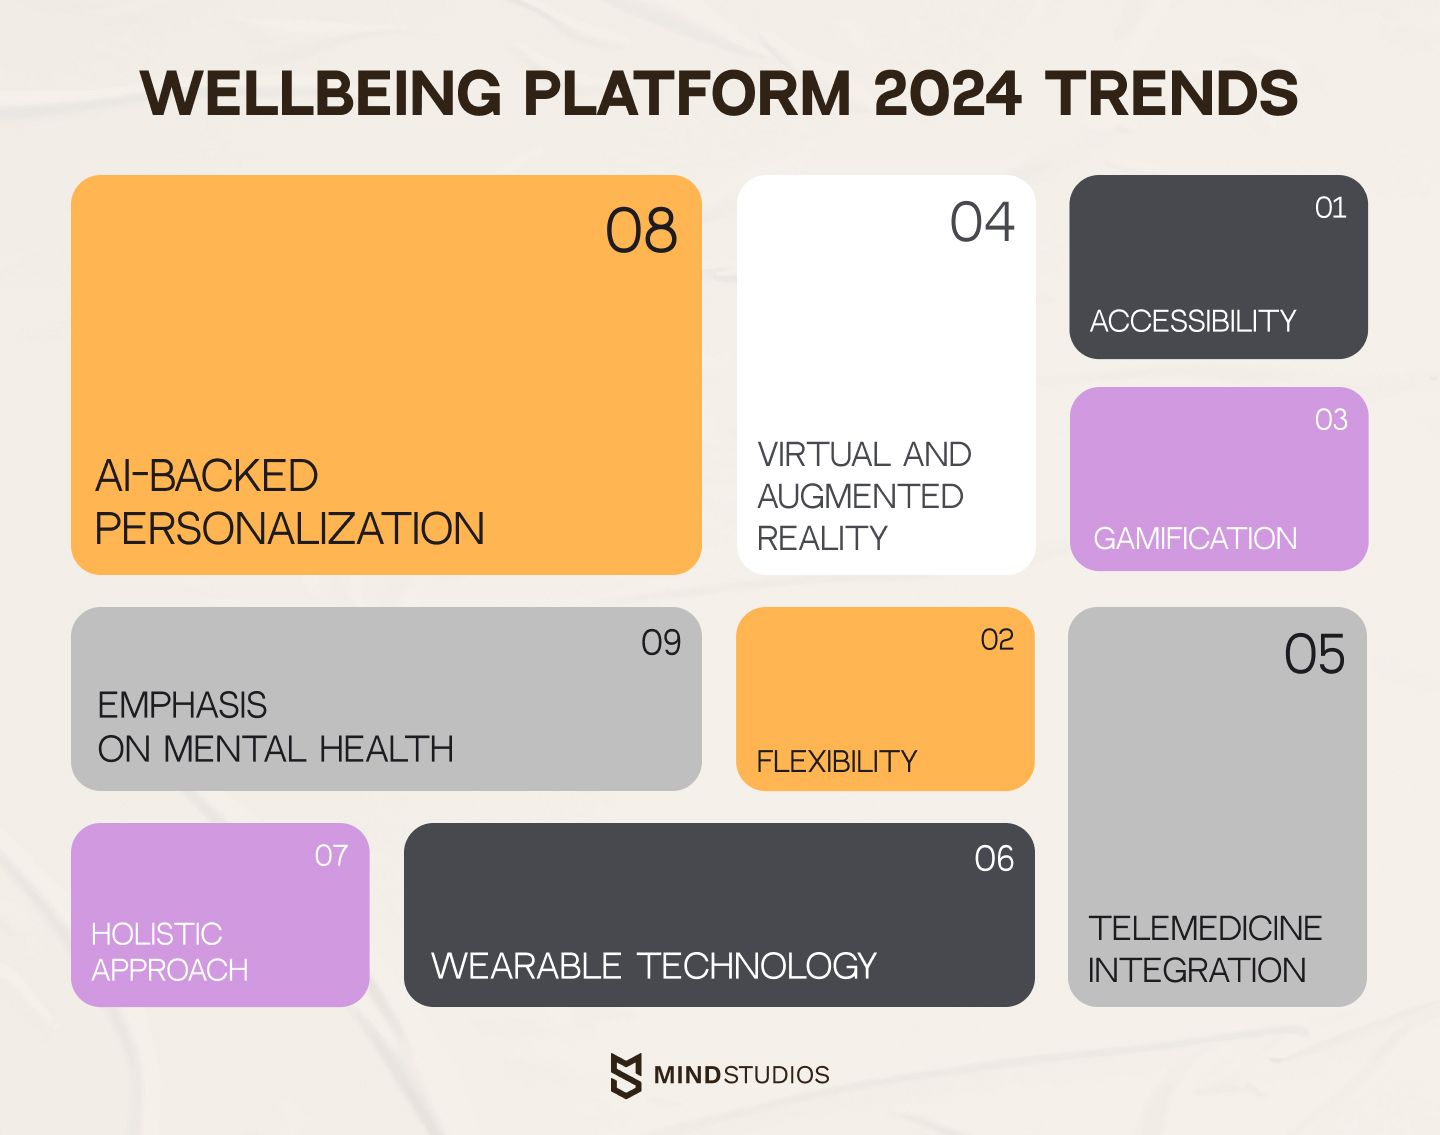 Wellbeing platform 2024 trends